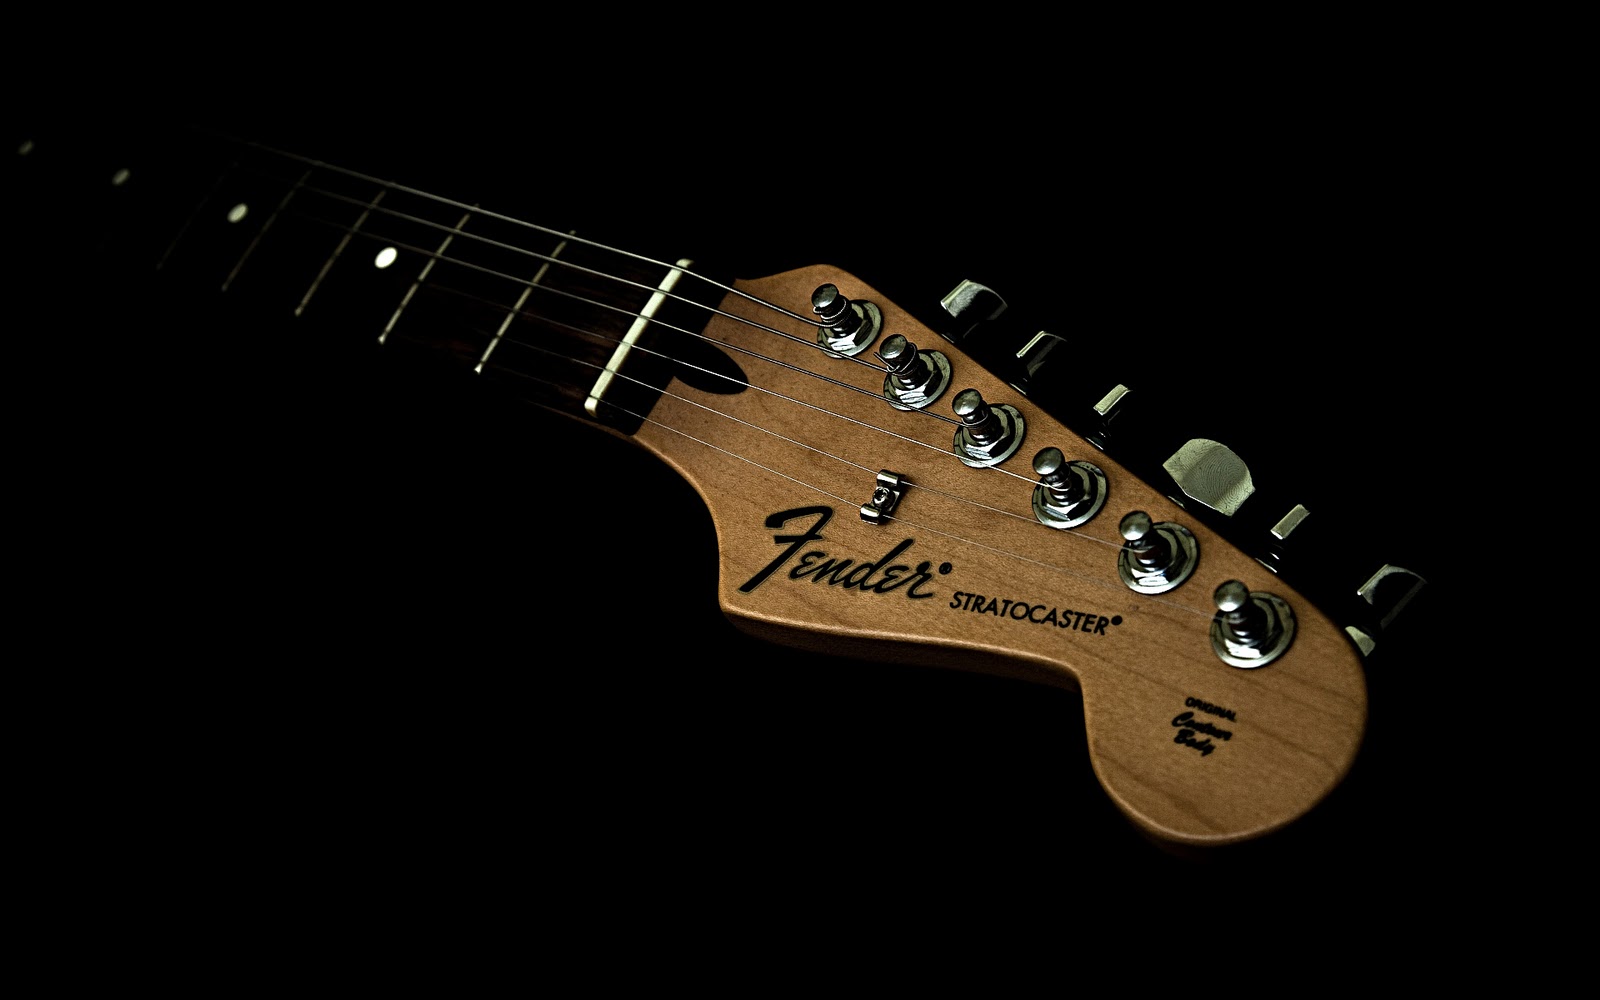 Electric Guitar Wallpaper Hd Fender guitar